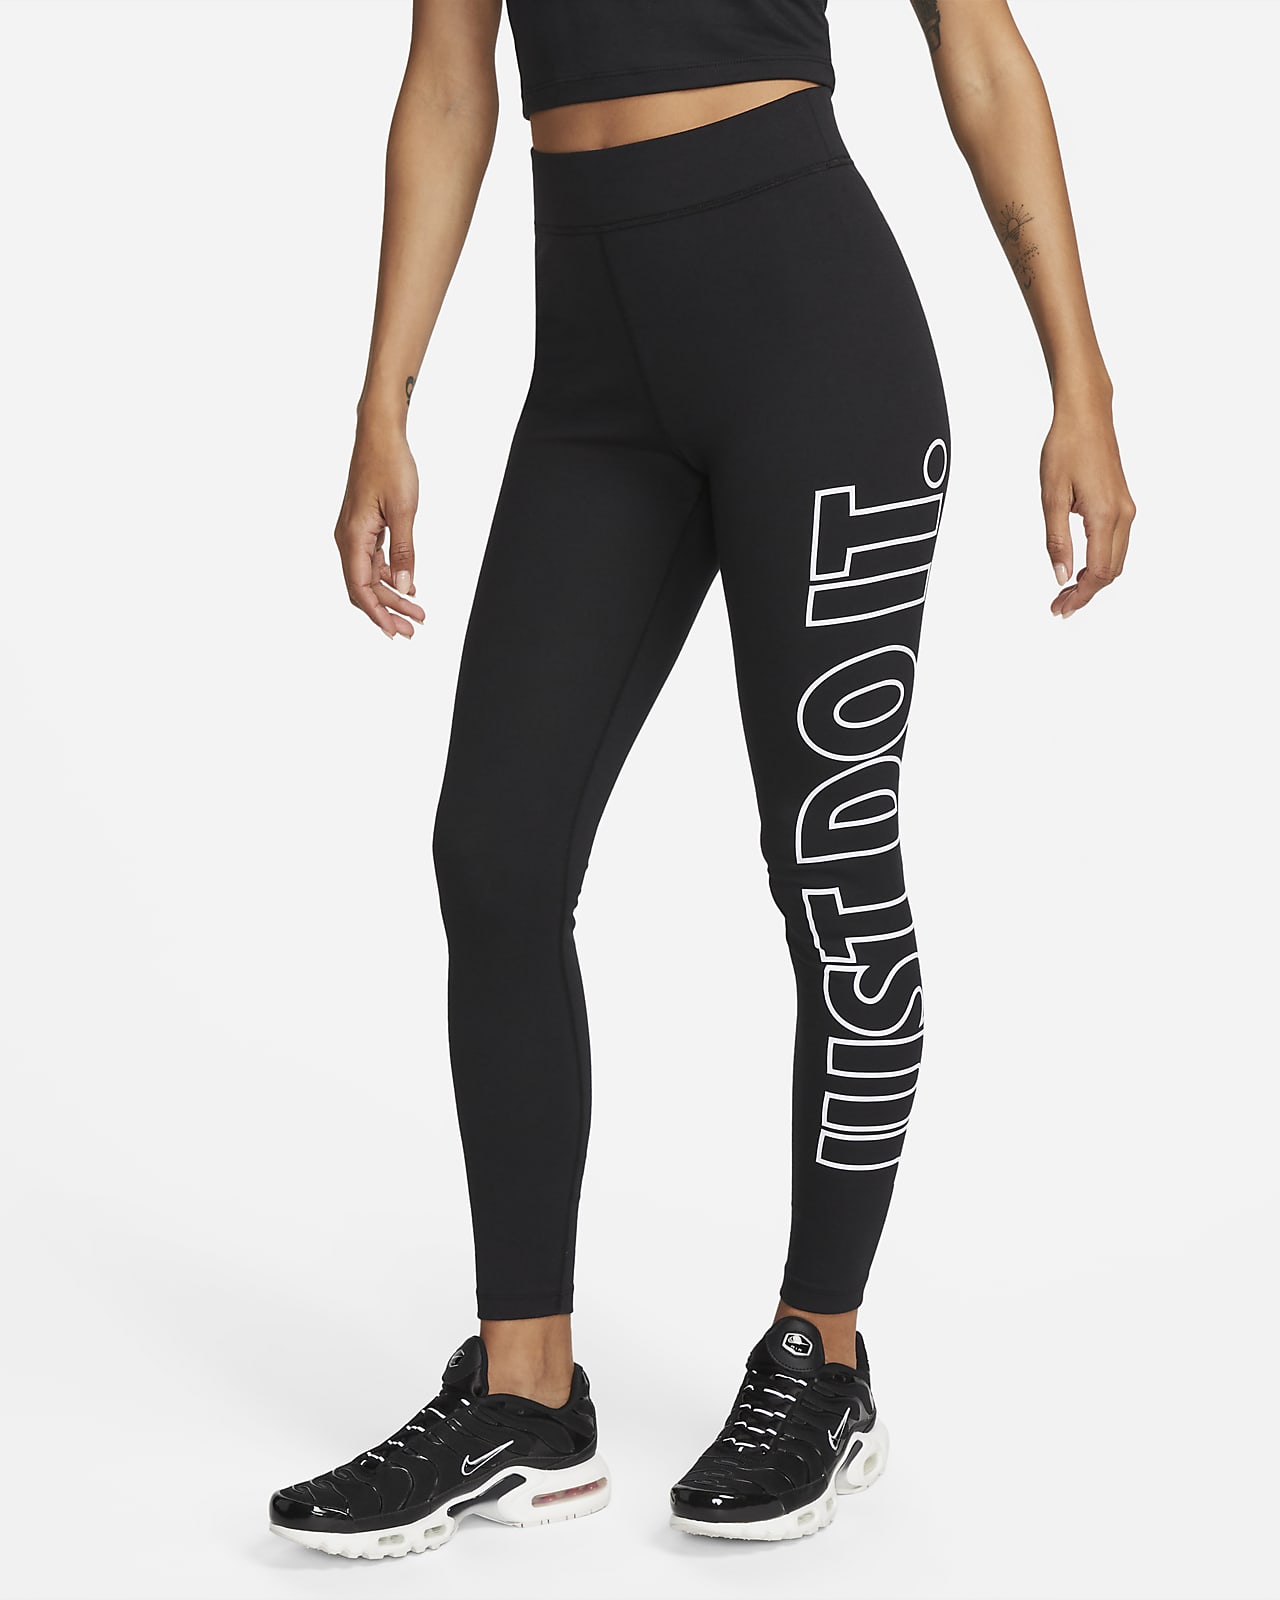 Nike Sportlegging - Maat L - Vrouwen - zwart